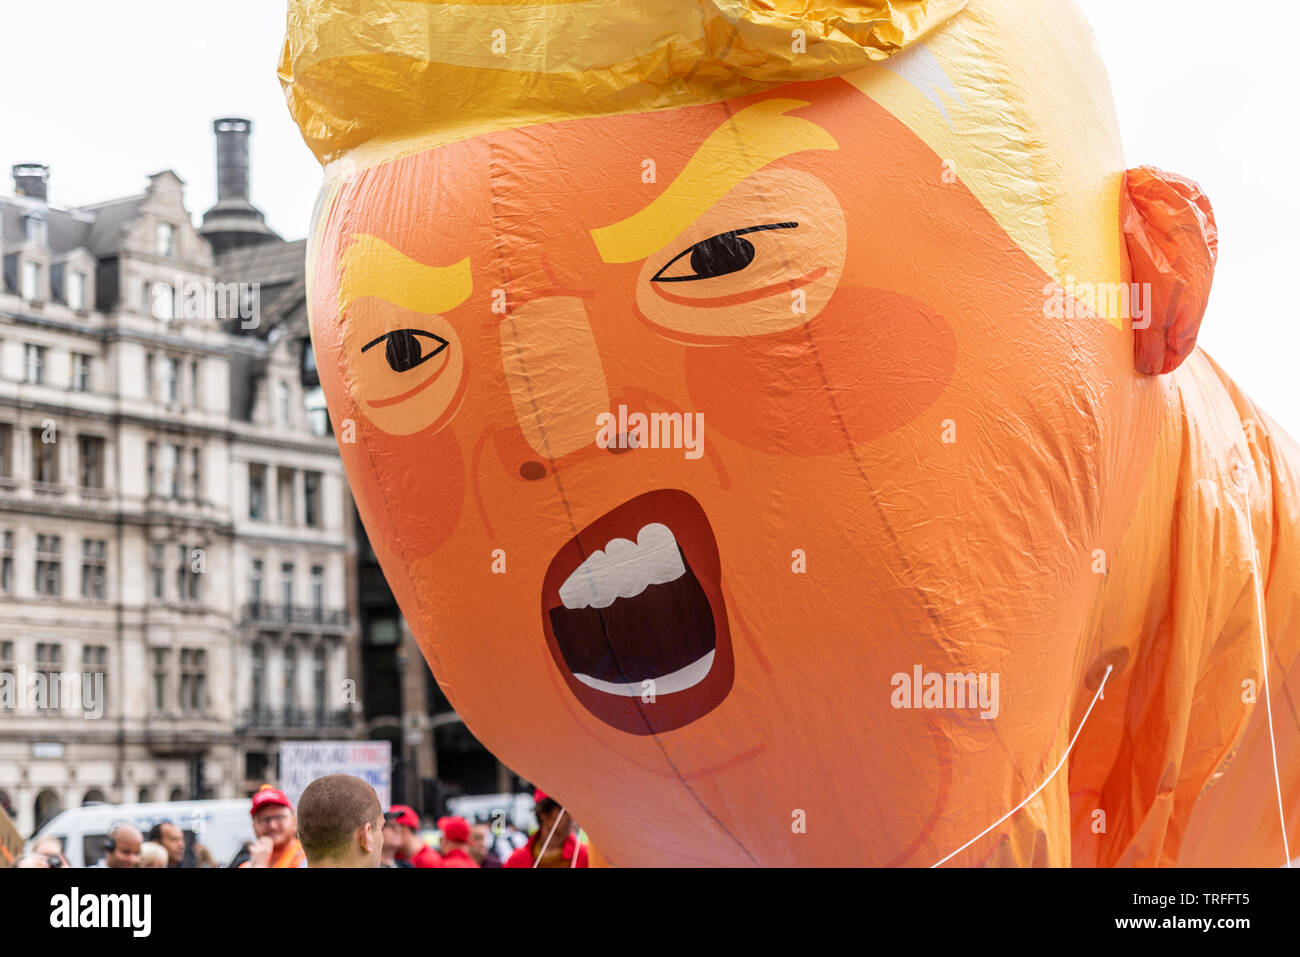 Donald Trump baby blimp Ballon in Parliament Square, London, UK während der US-Präsident auf Staatsbesuch. Gesicht während der Inflation. Verärgert aussehen Stockfoto